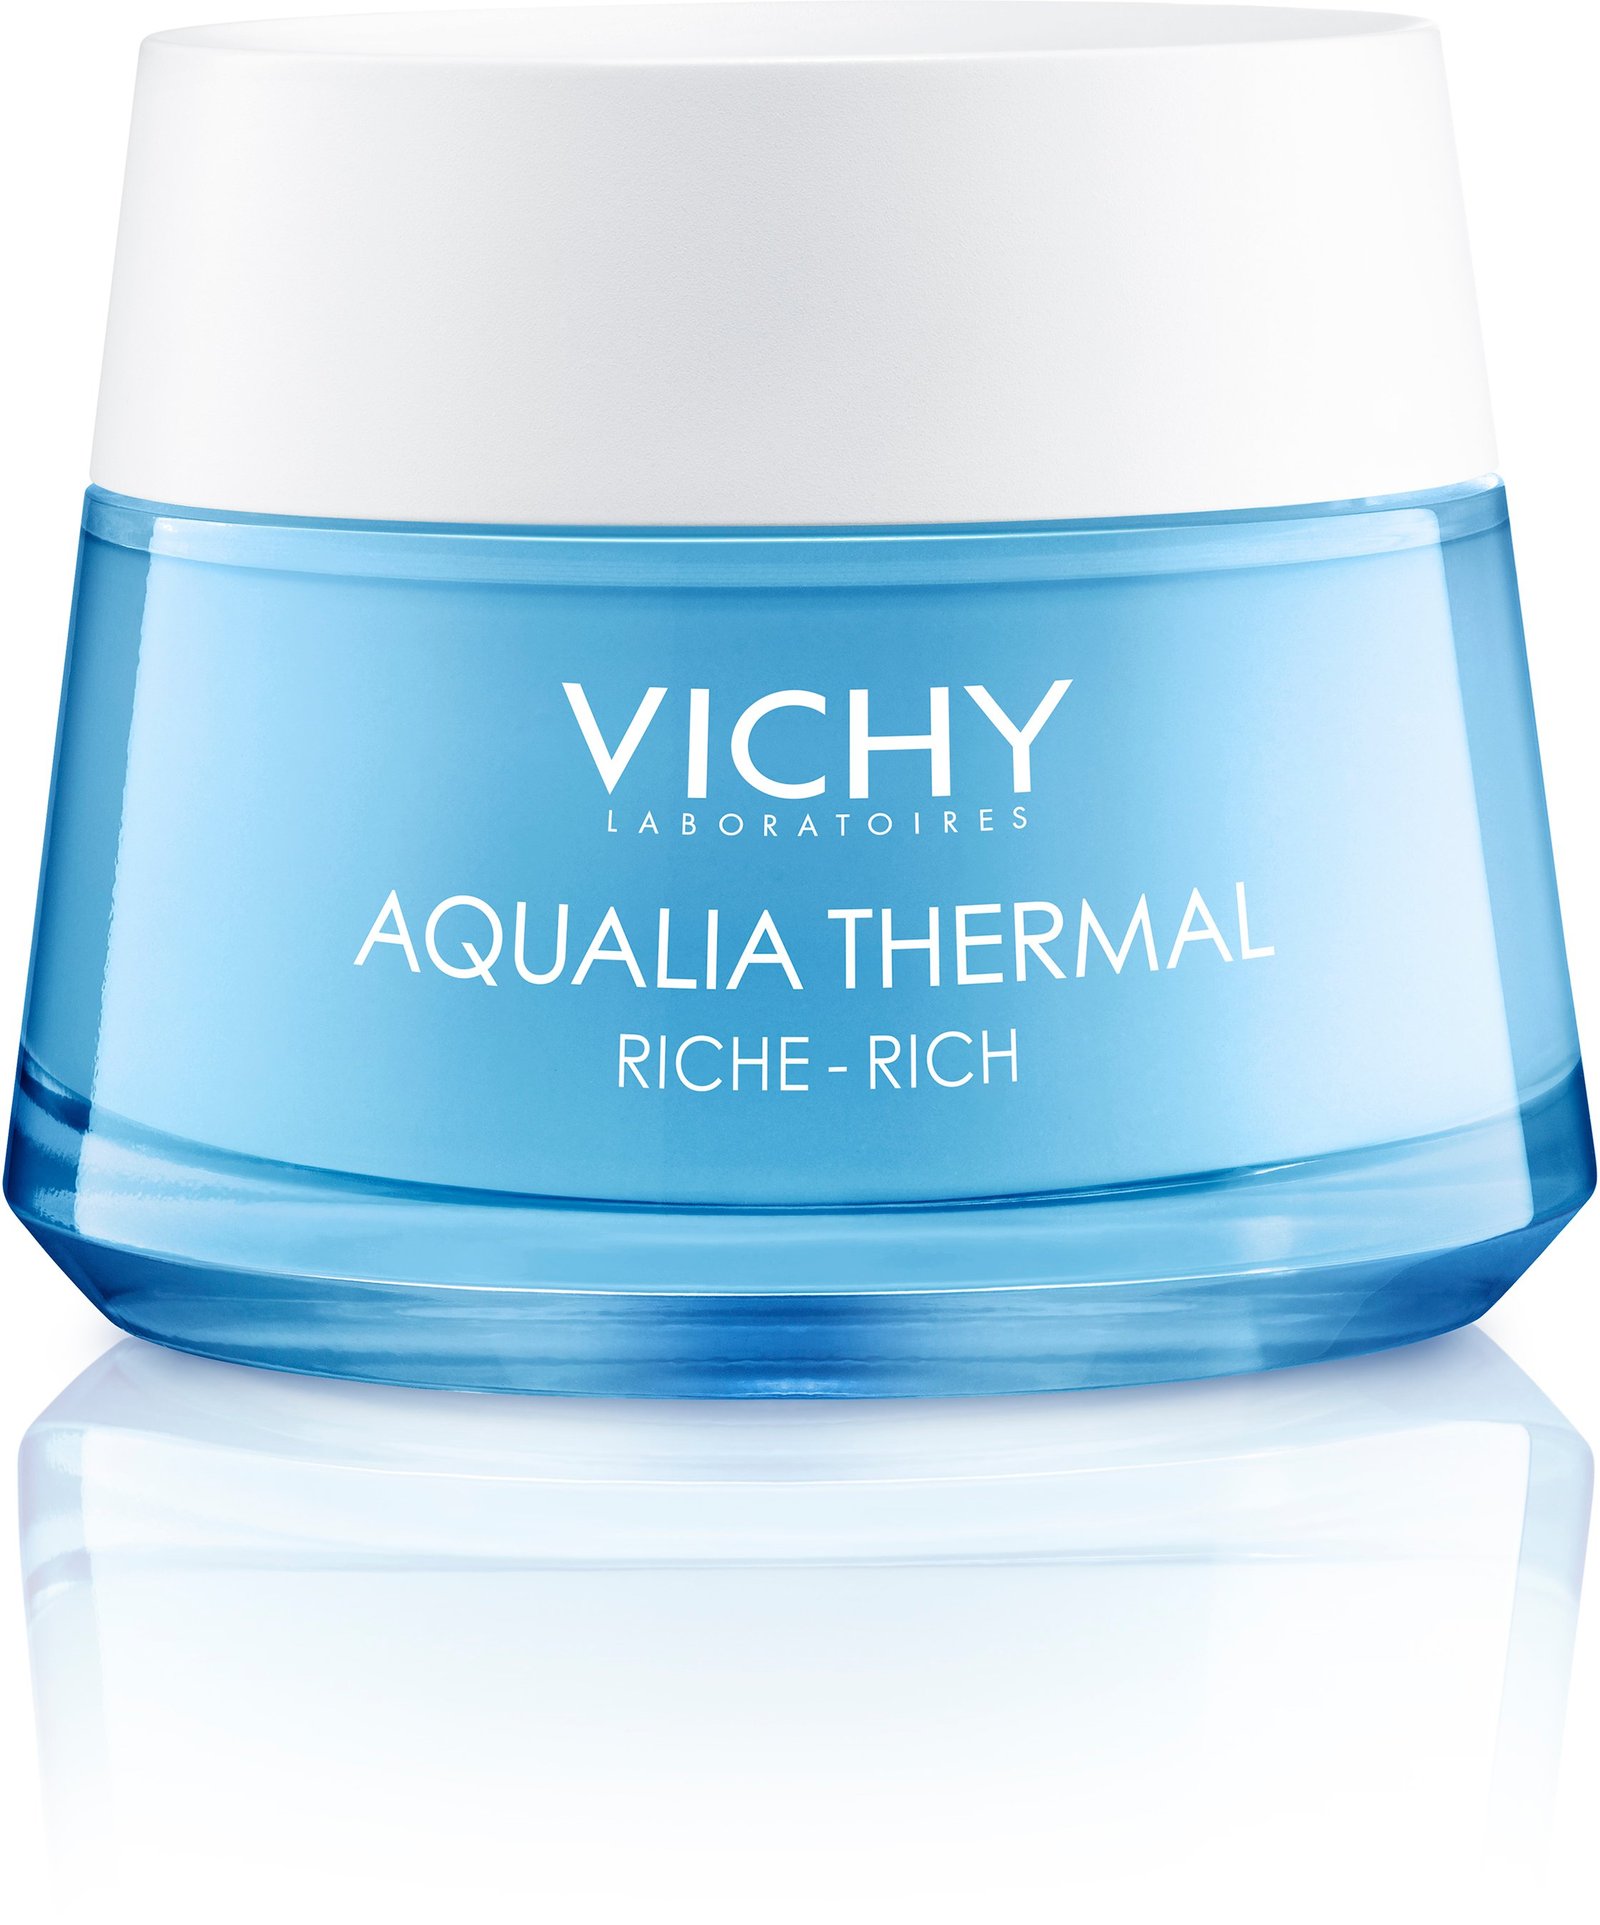 Vichy Aqualia Thermal Rehydrating Rich Cream 50 ml